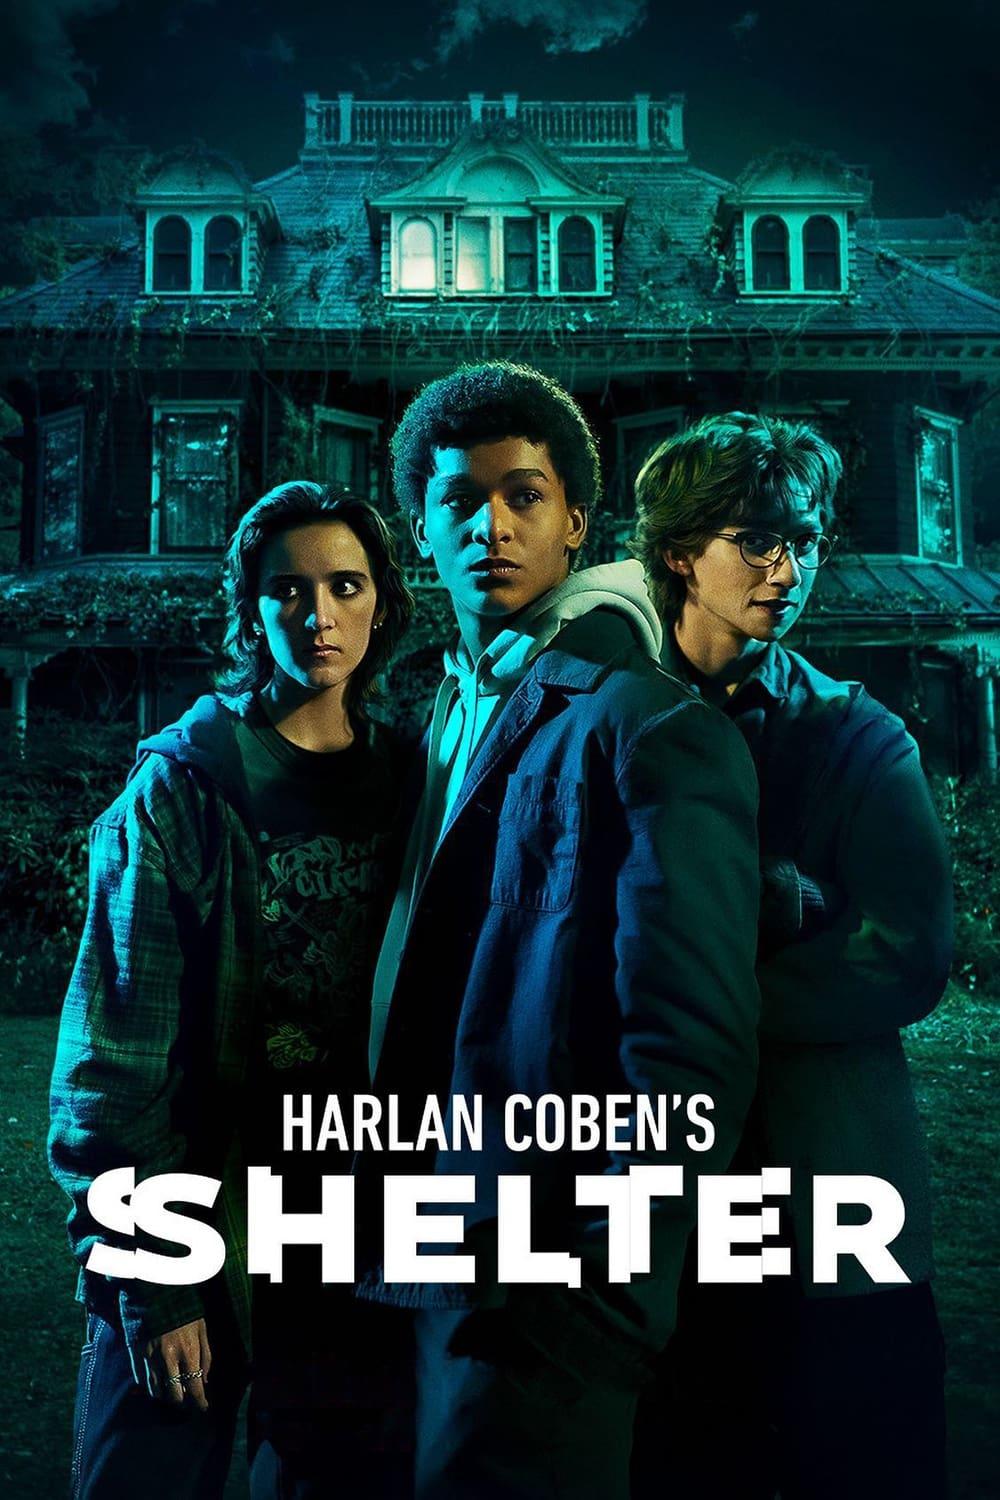 Harlan Coben's Shelter poster